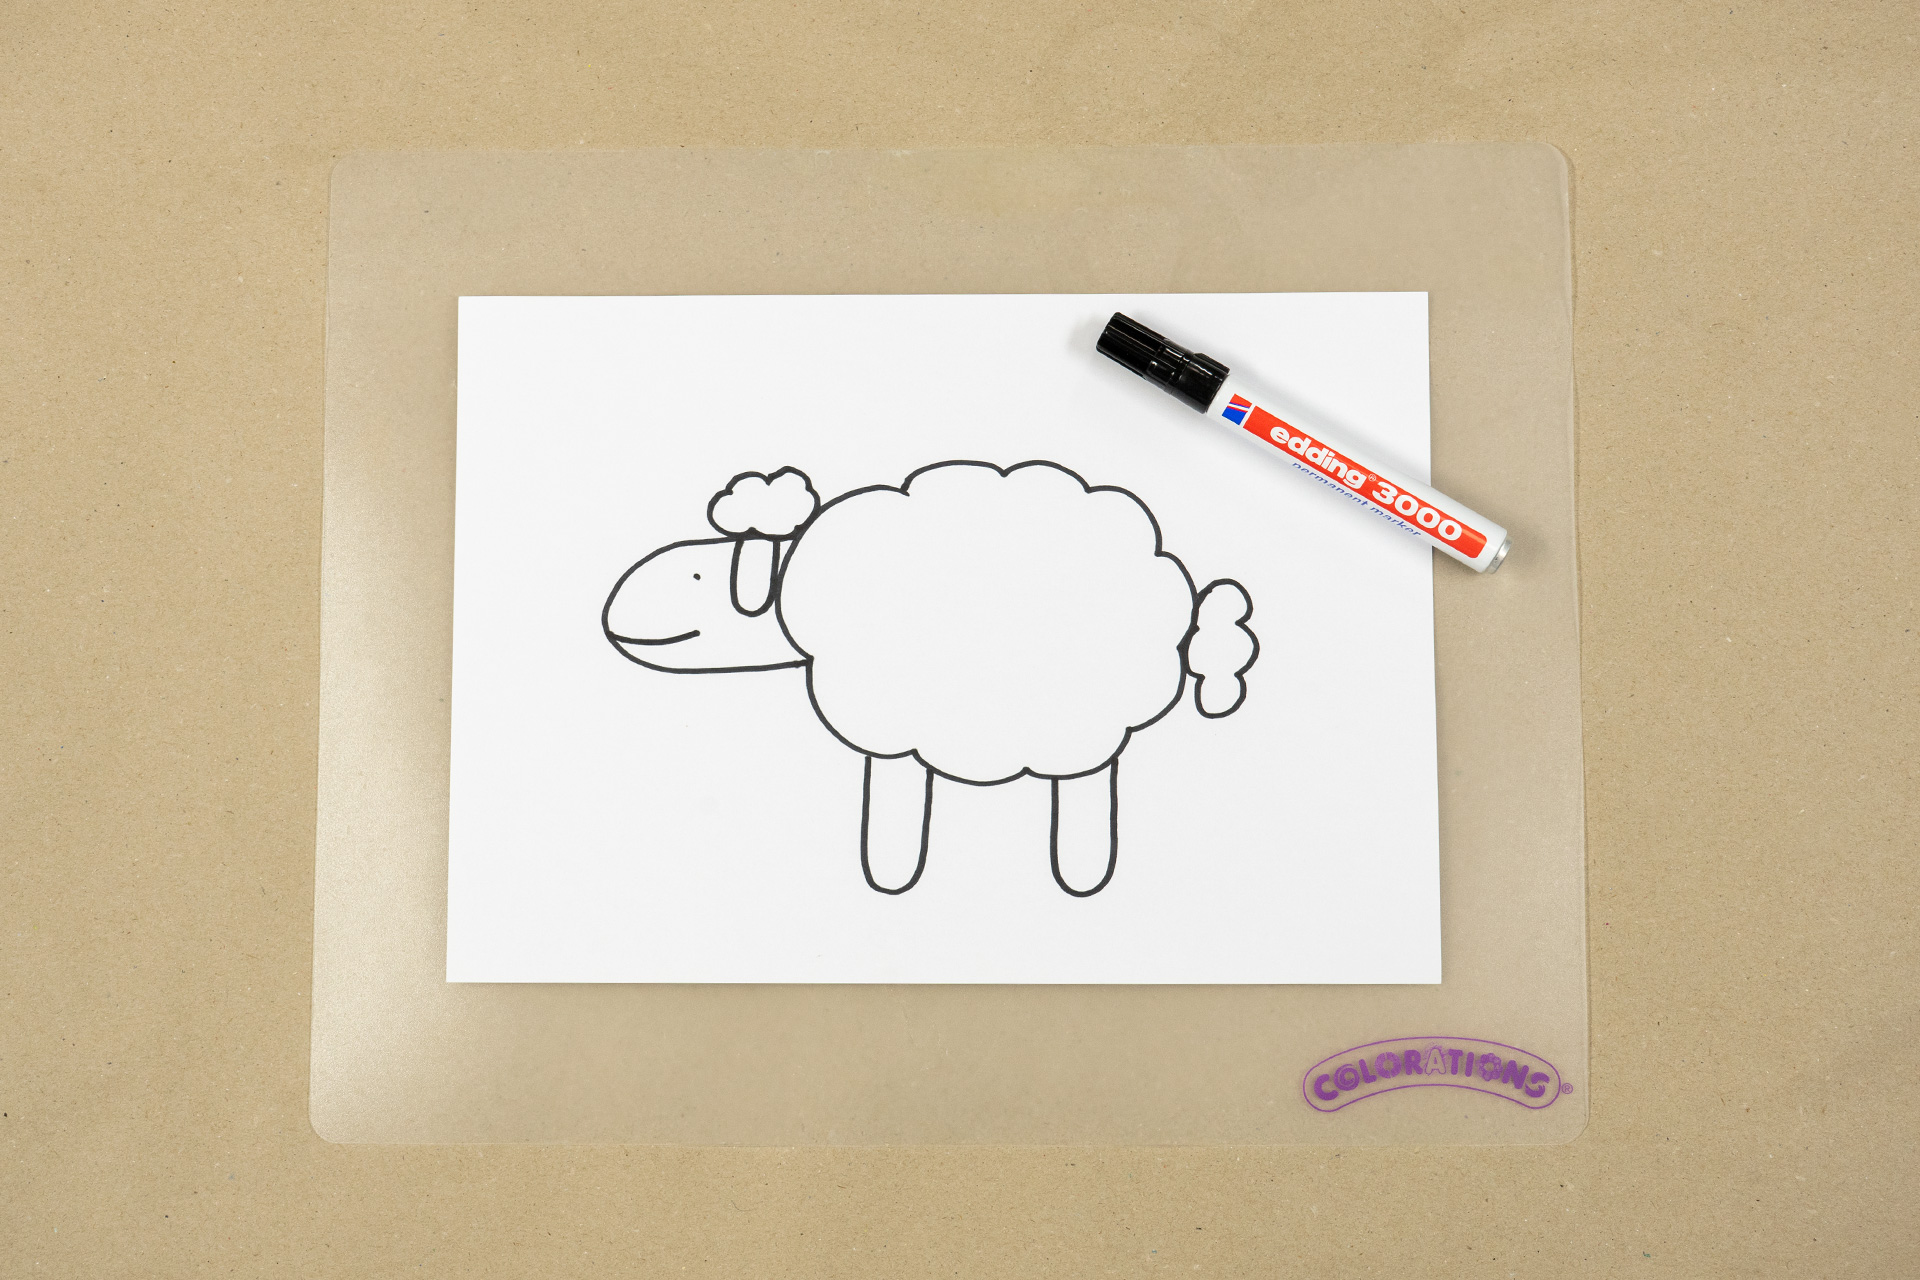 <p>Auch wenn ihr keinen großen Künstler seid, könnt ihr mit euren Kindern aus Wolken und dem Buchstaben "U" leicht Schafe ges